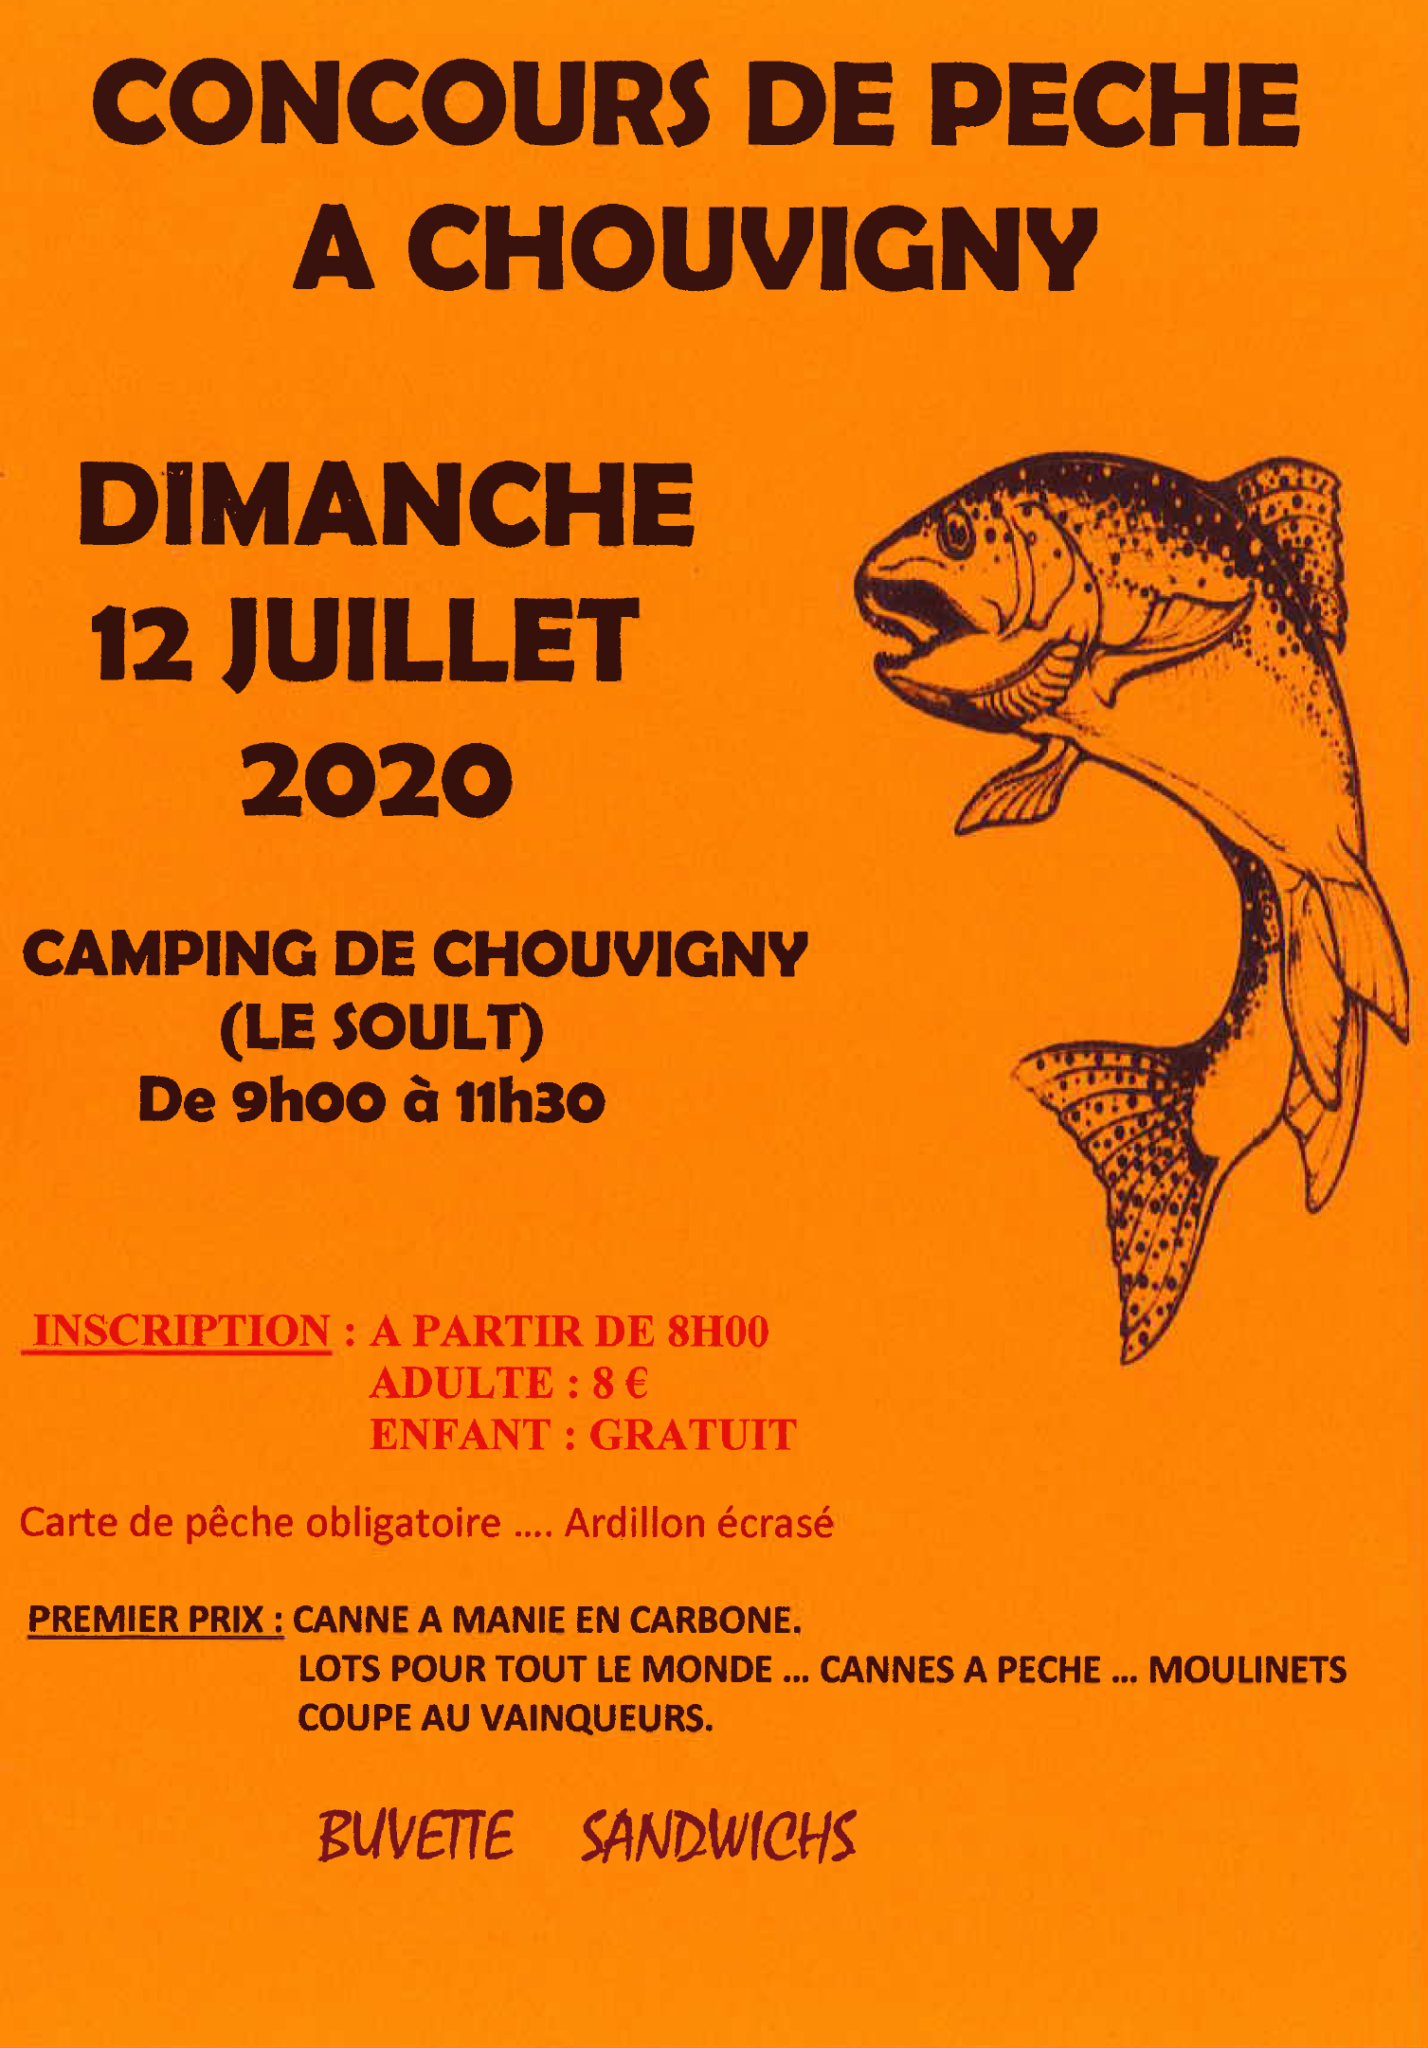 Concours de pêche Ebreuil juillet 2020